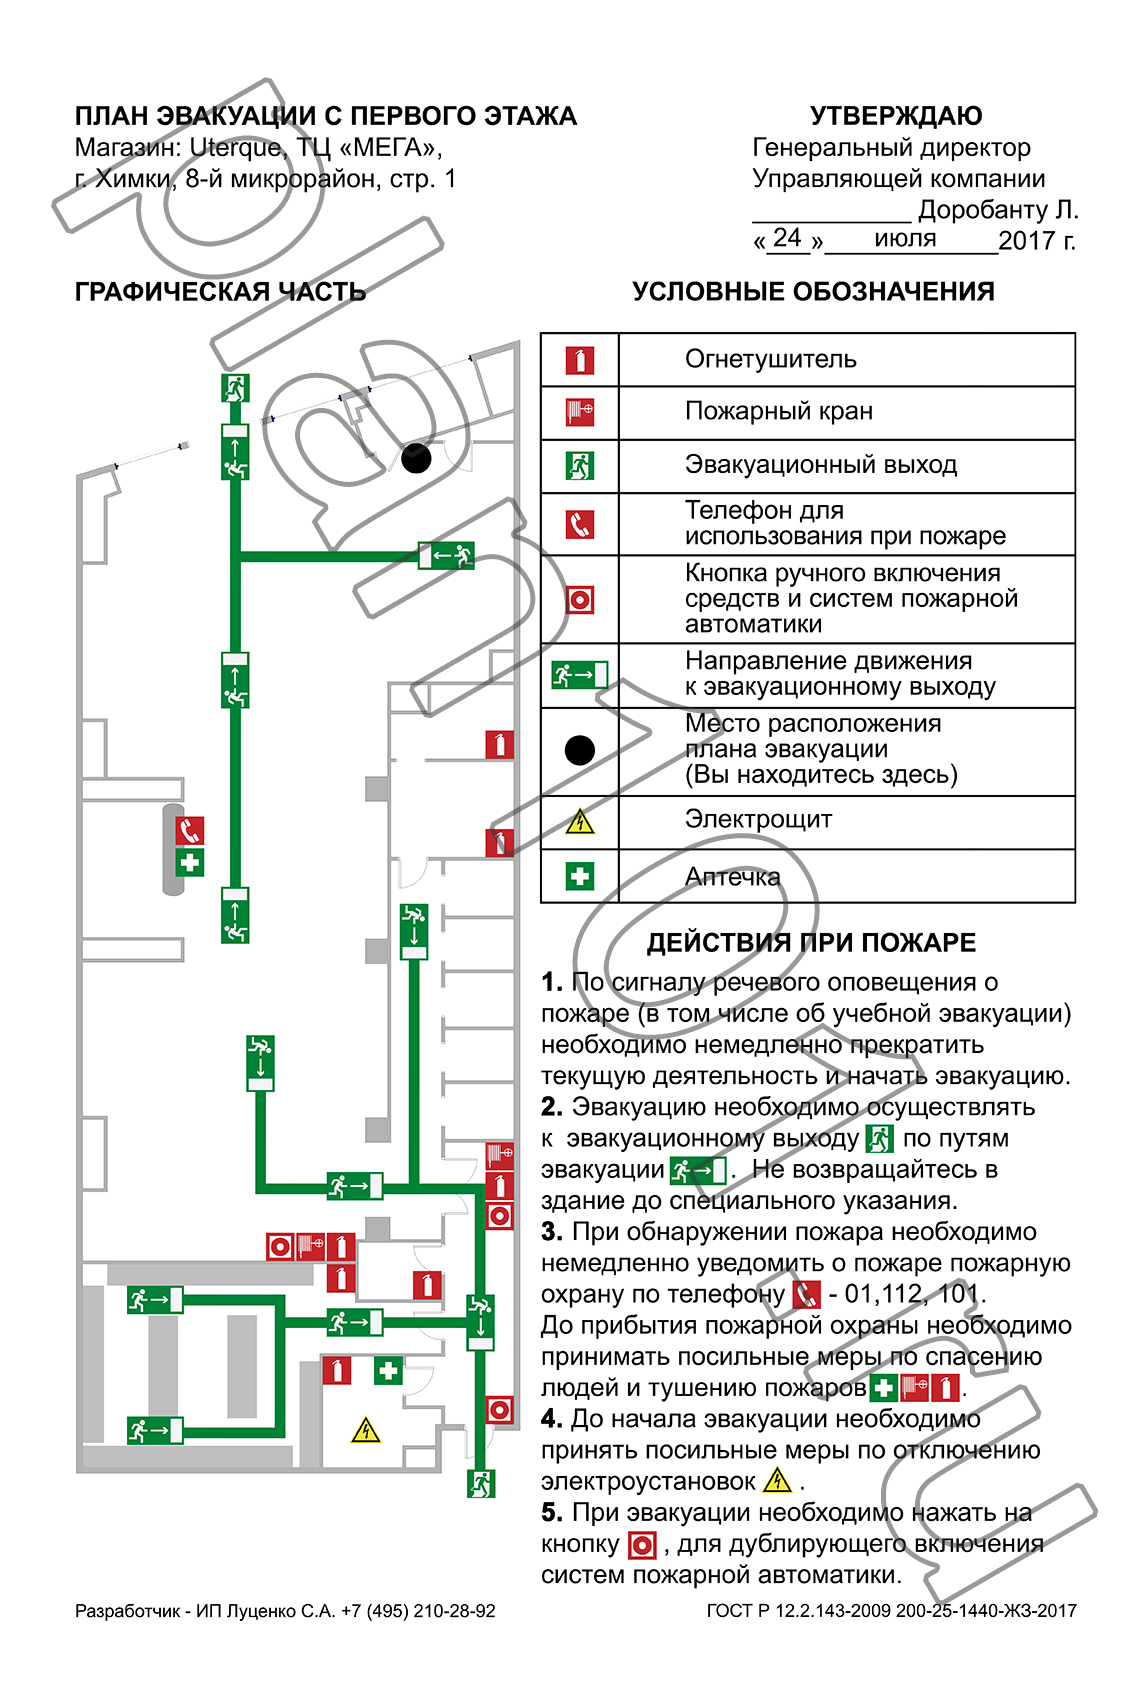 План эвакуации людей при пожаре магазина одежды «Uterque» в ТЦ «МЕГА» г. Химки 400x600